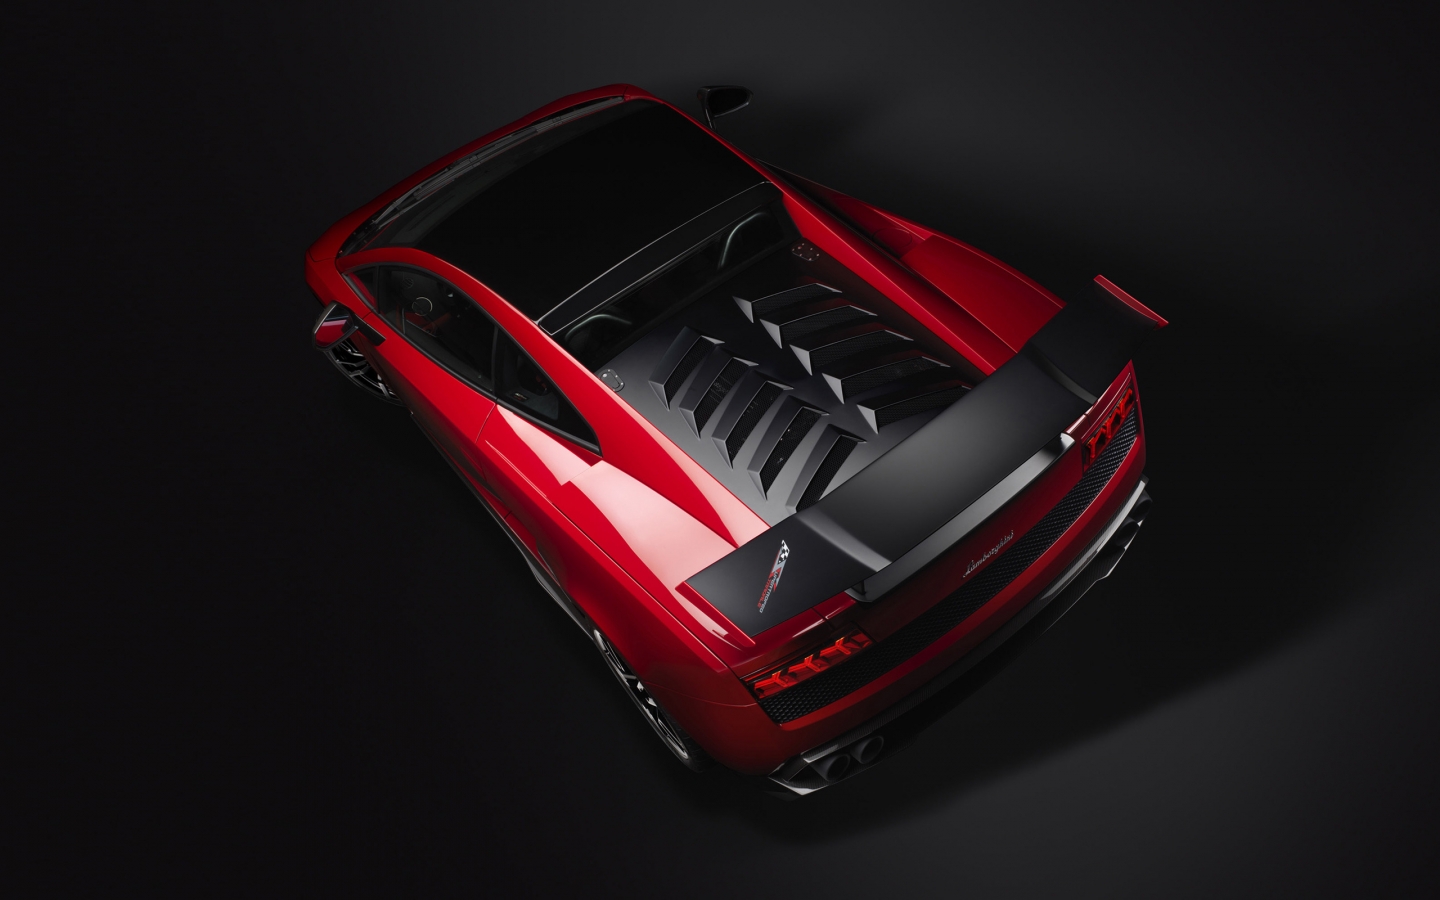 Red Lamborghini Gallardo Stradale for 1440 x 900 widescreen resolution